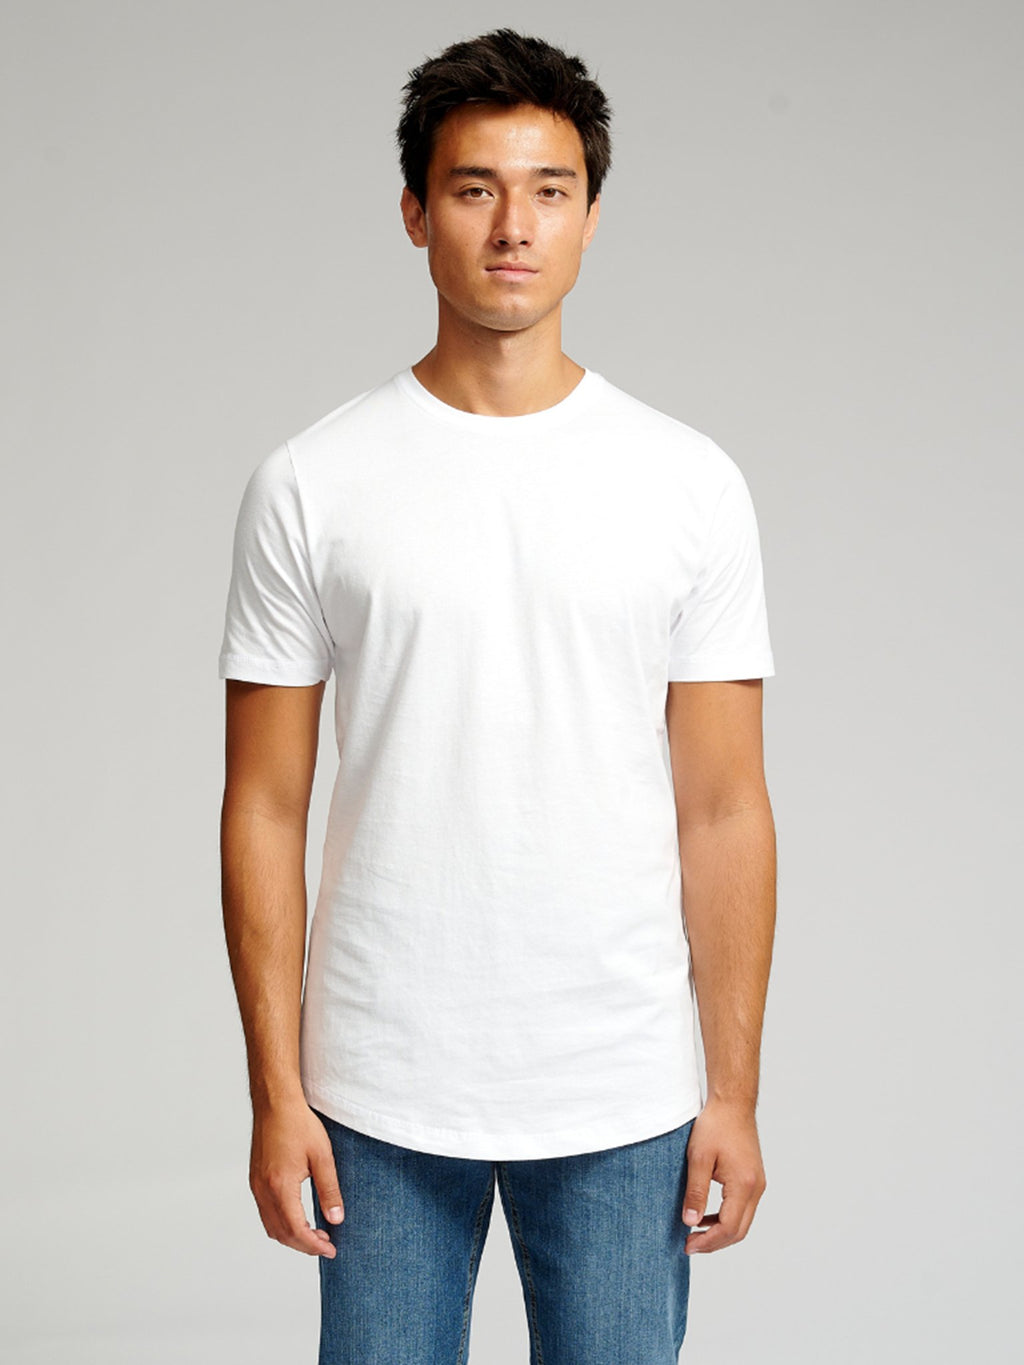 Dlhé tričko - balík (9 ks)